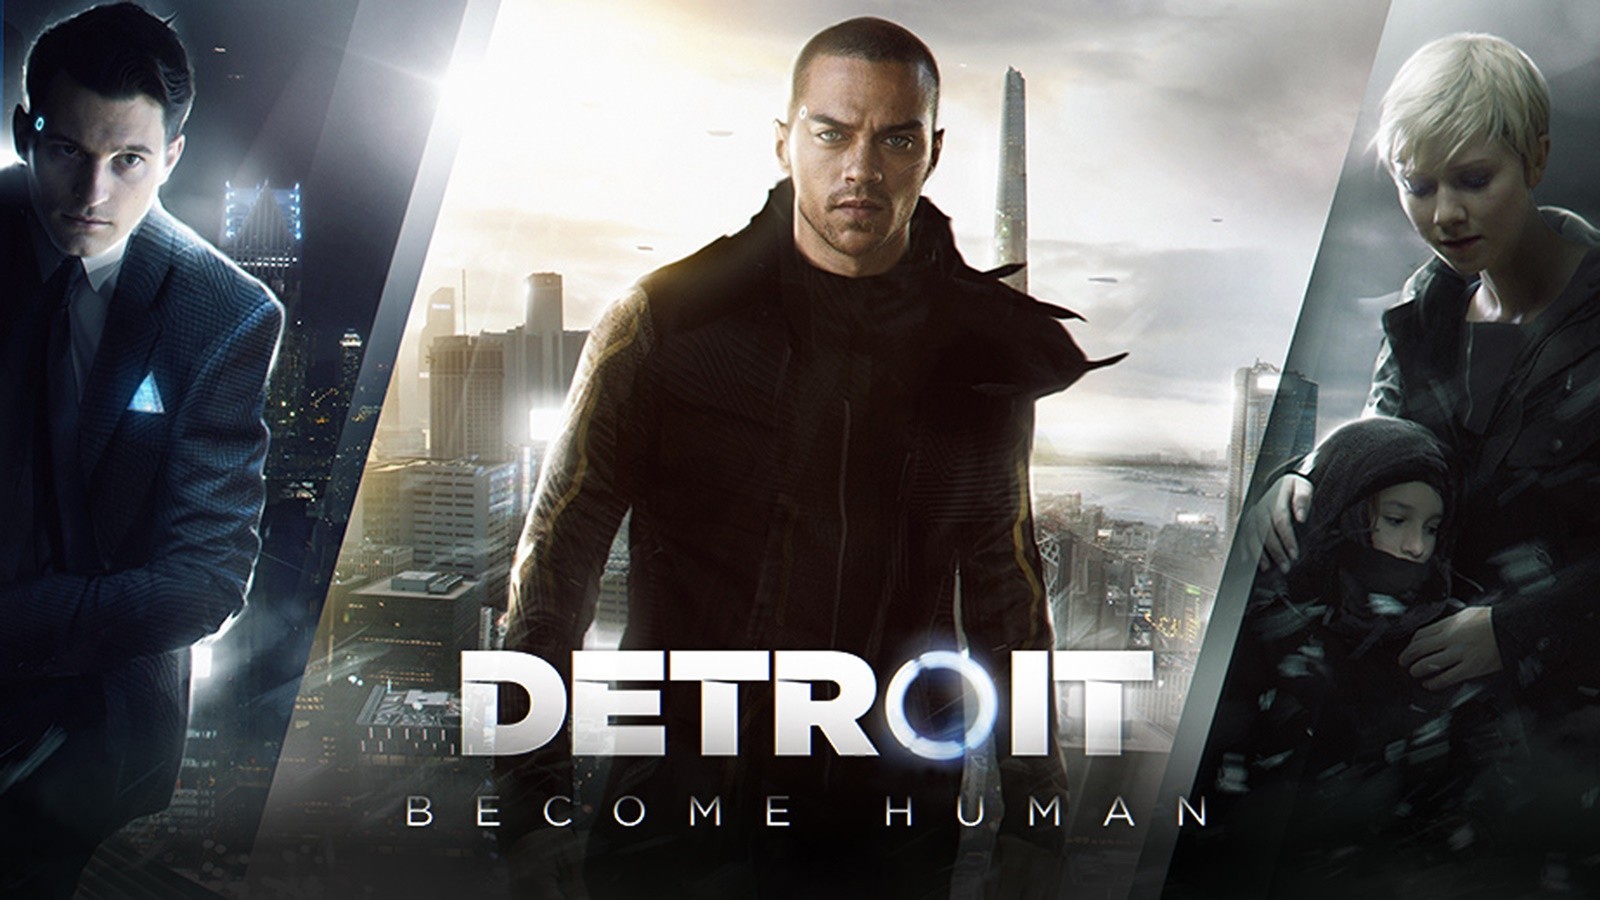 Detroit: Become Human spelsuggestie